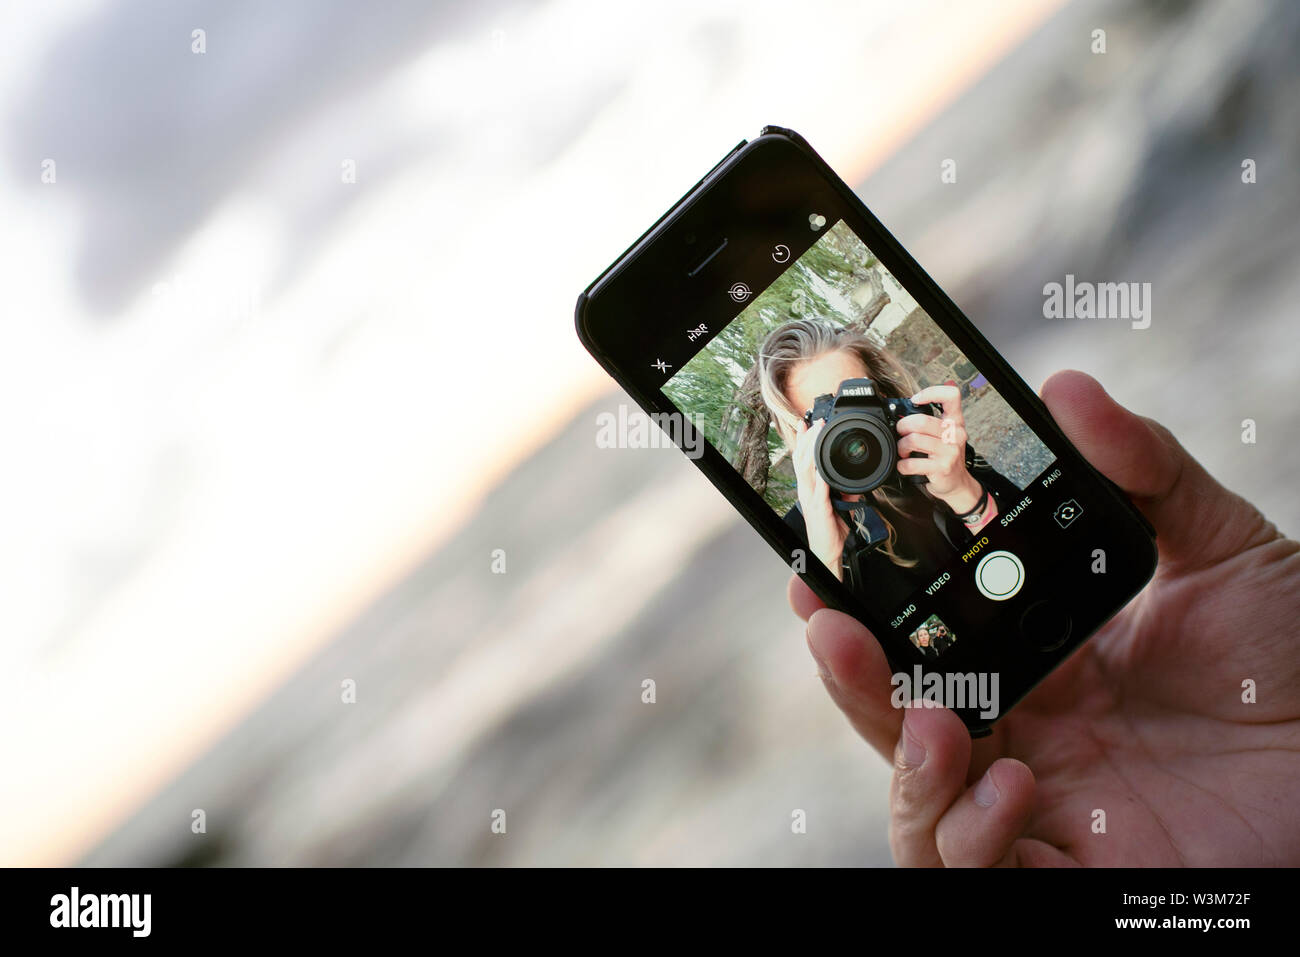 Fotógrafo femenina teniendo un auto-retrato/ selfie mientras un hombre sujetando el smartphone. Fotografía del smartphone, iphoneography viajes/ estilo de vida al aire libre Foto de stock